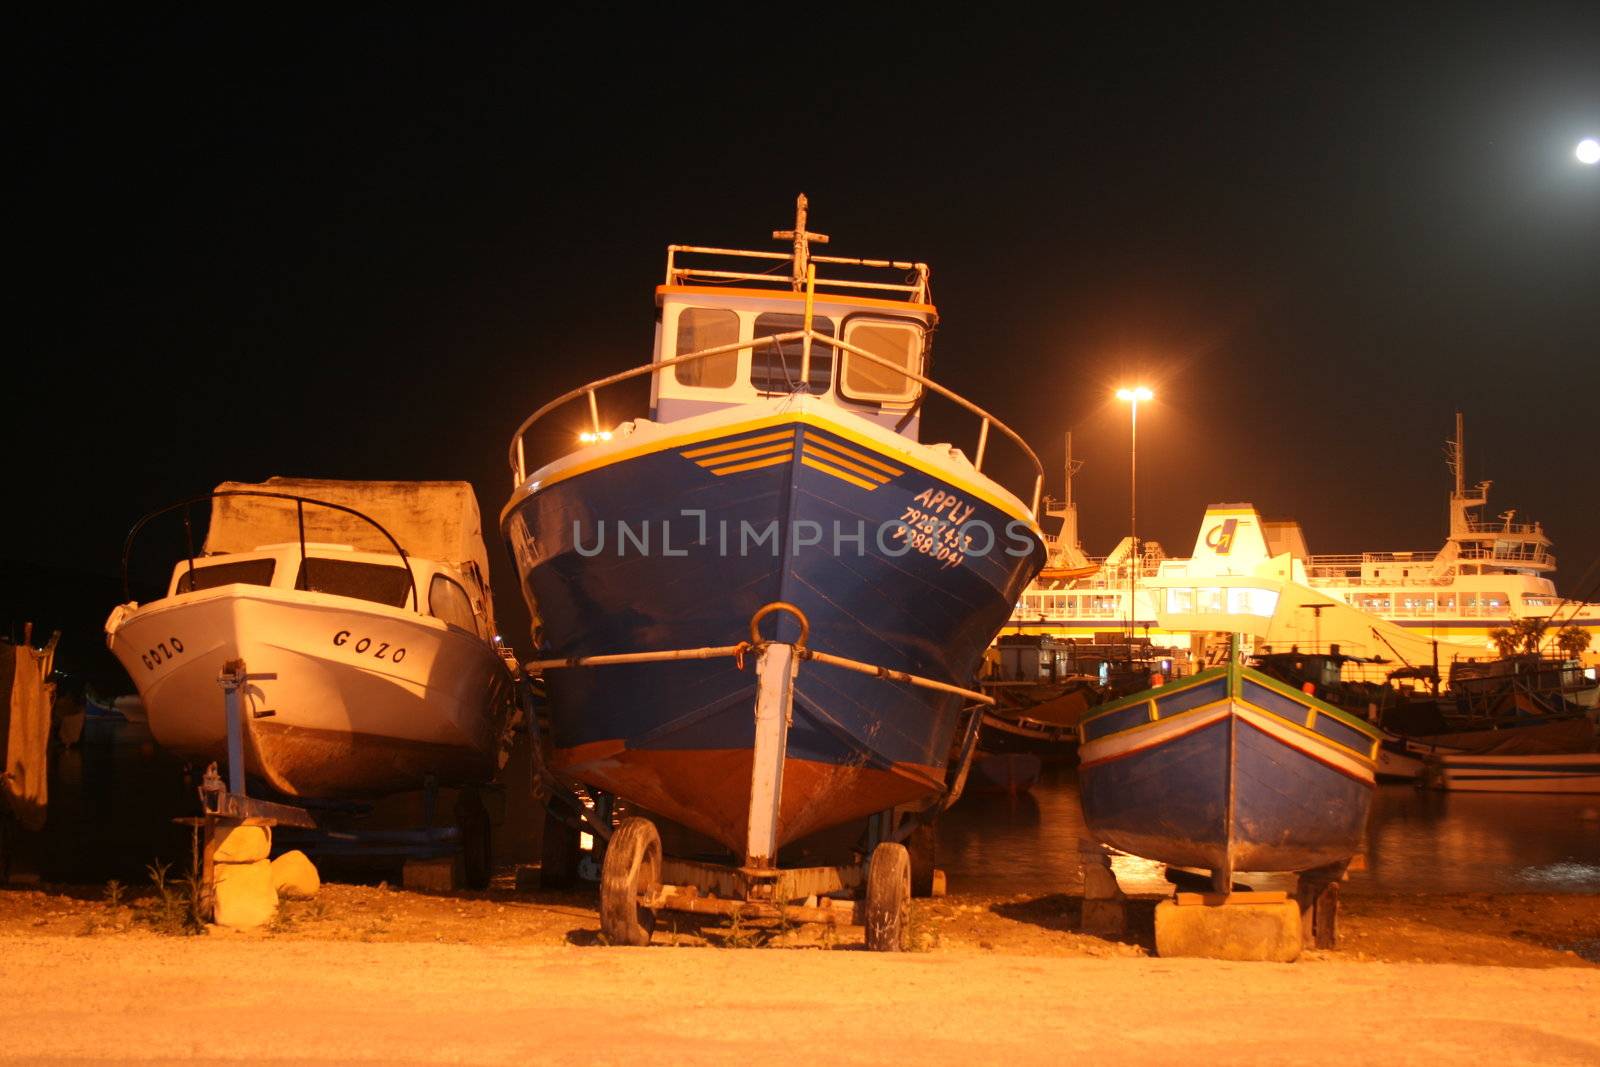 Boats in Gozo